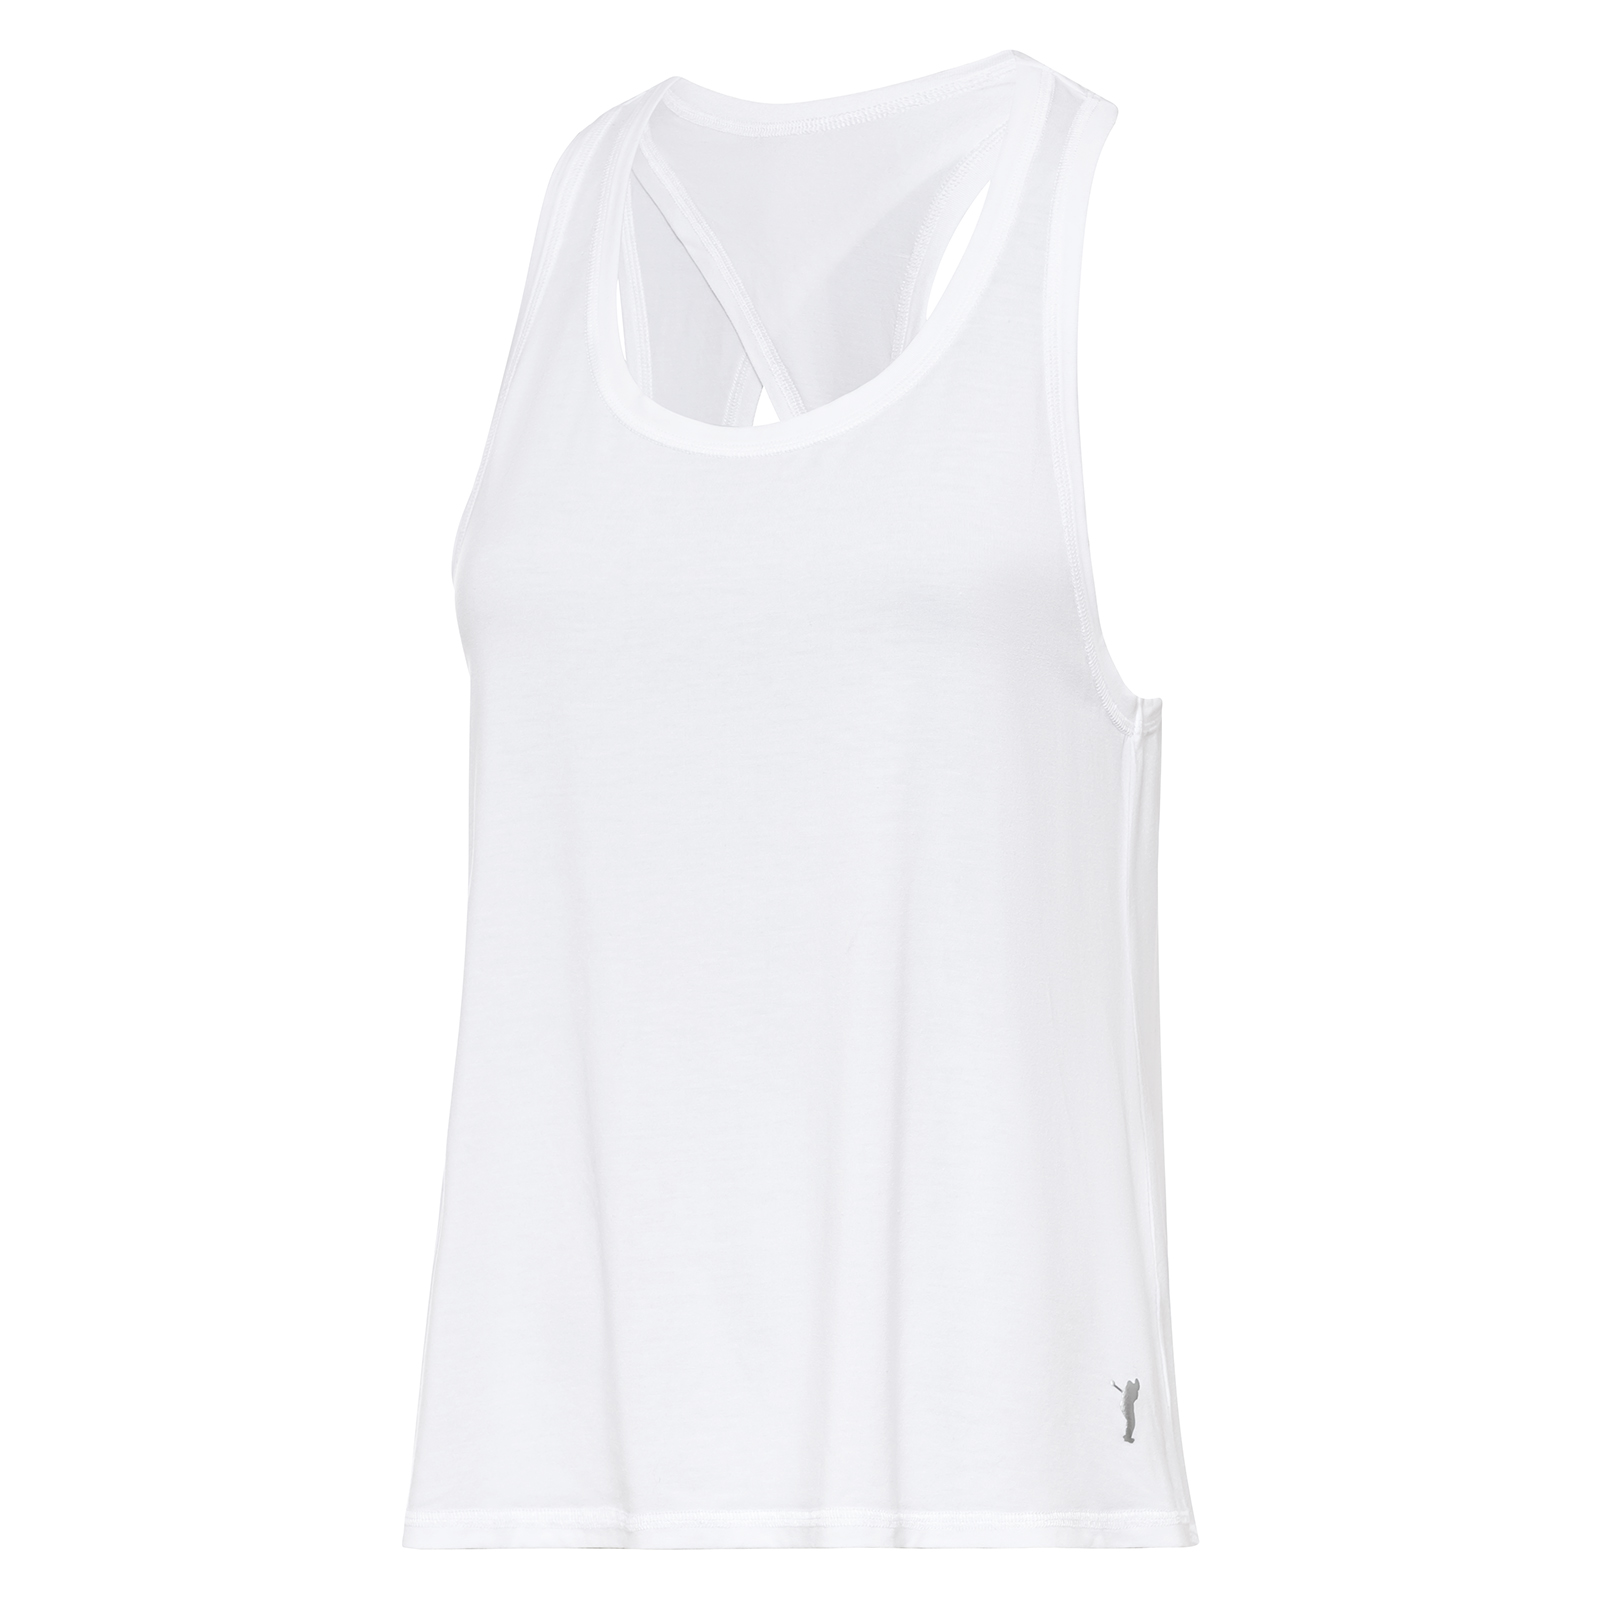 Camiseta deportiva sin mangas con abertura en la espalda para mujer